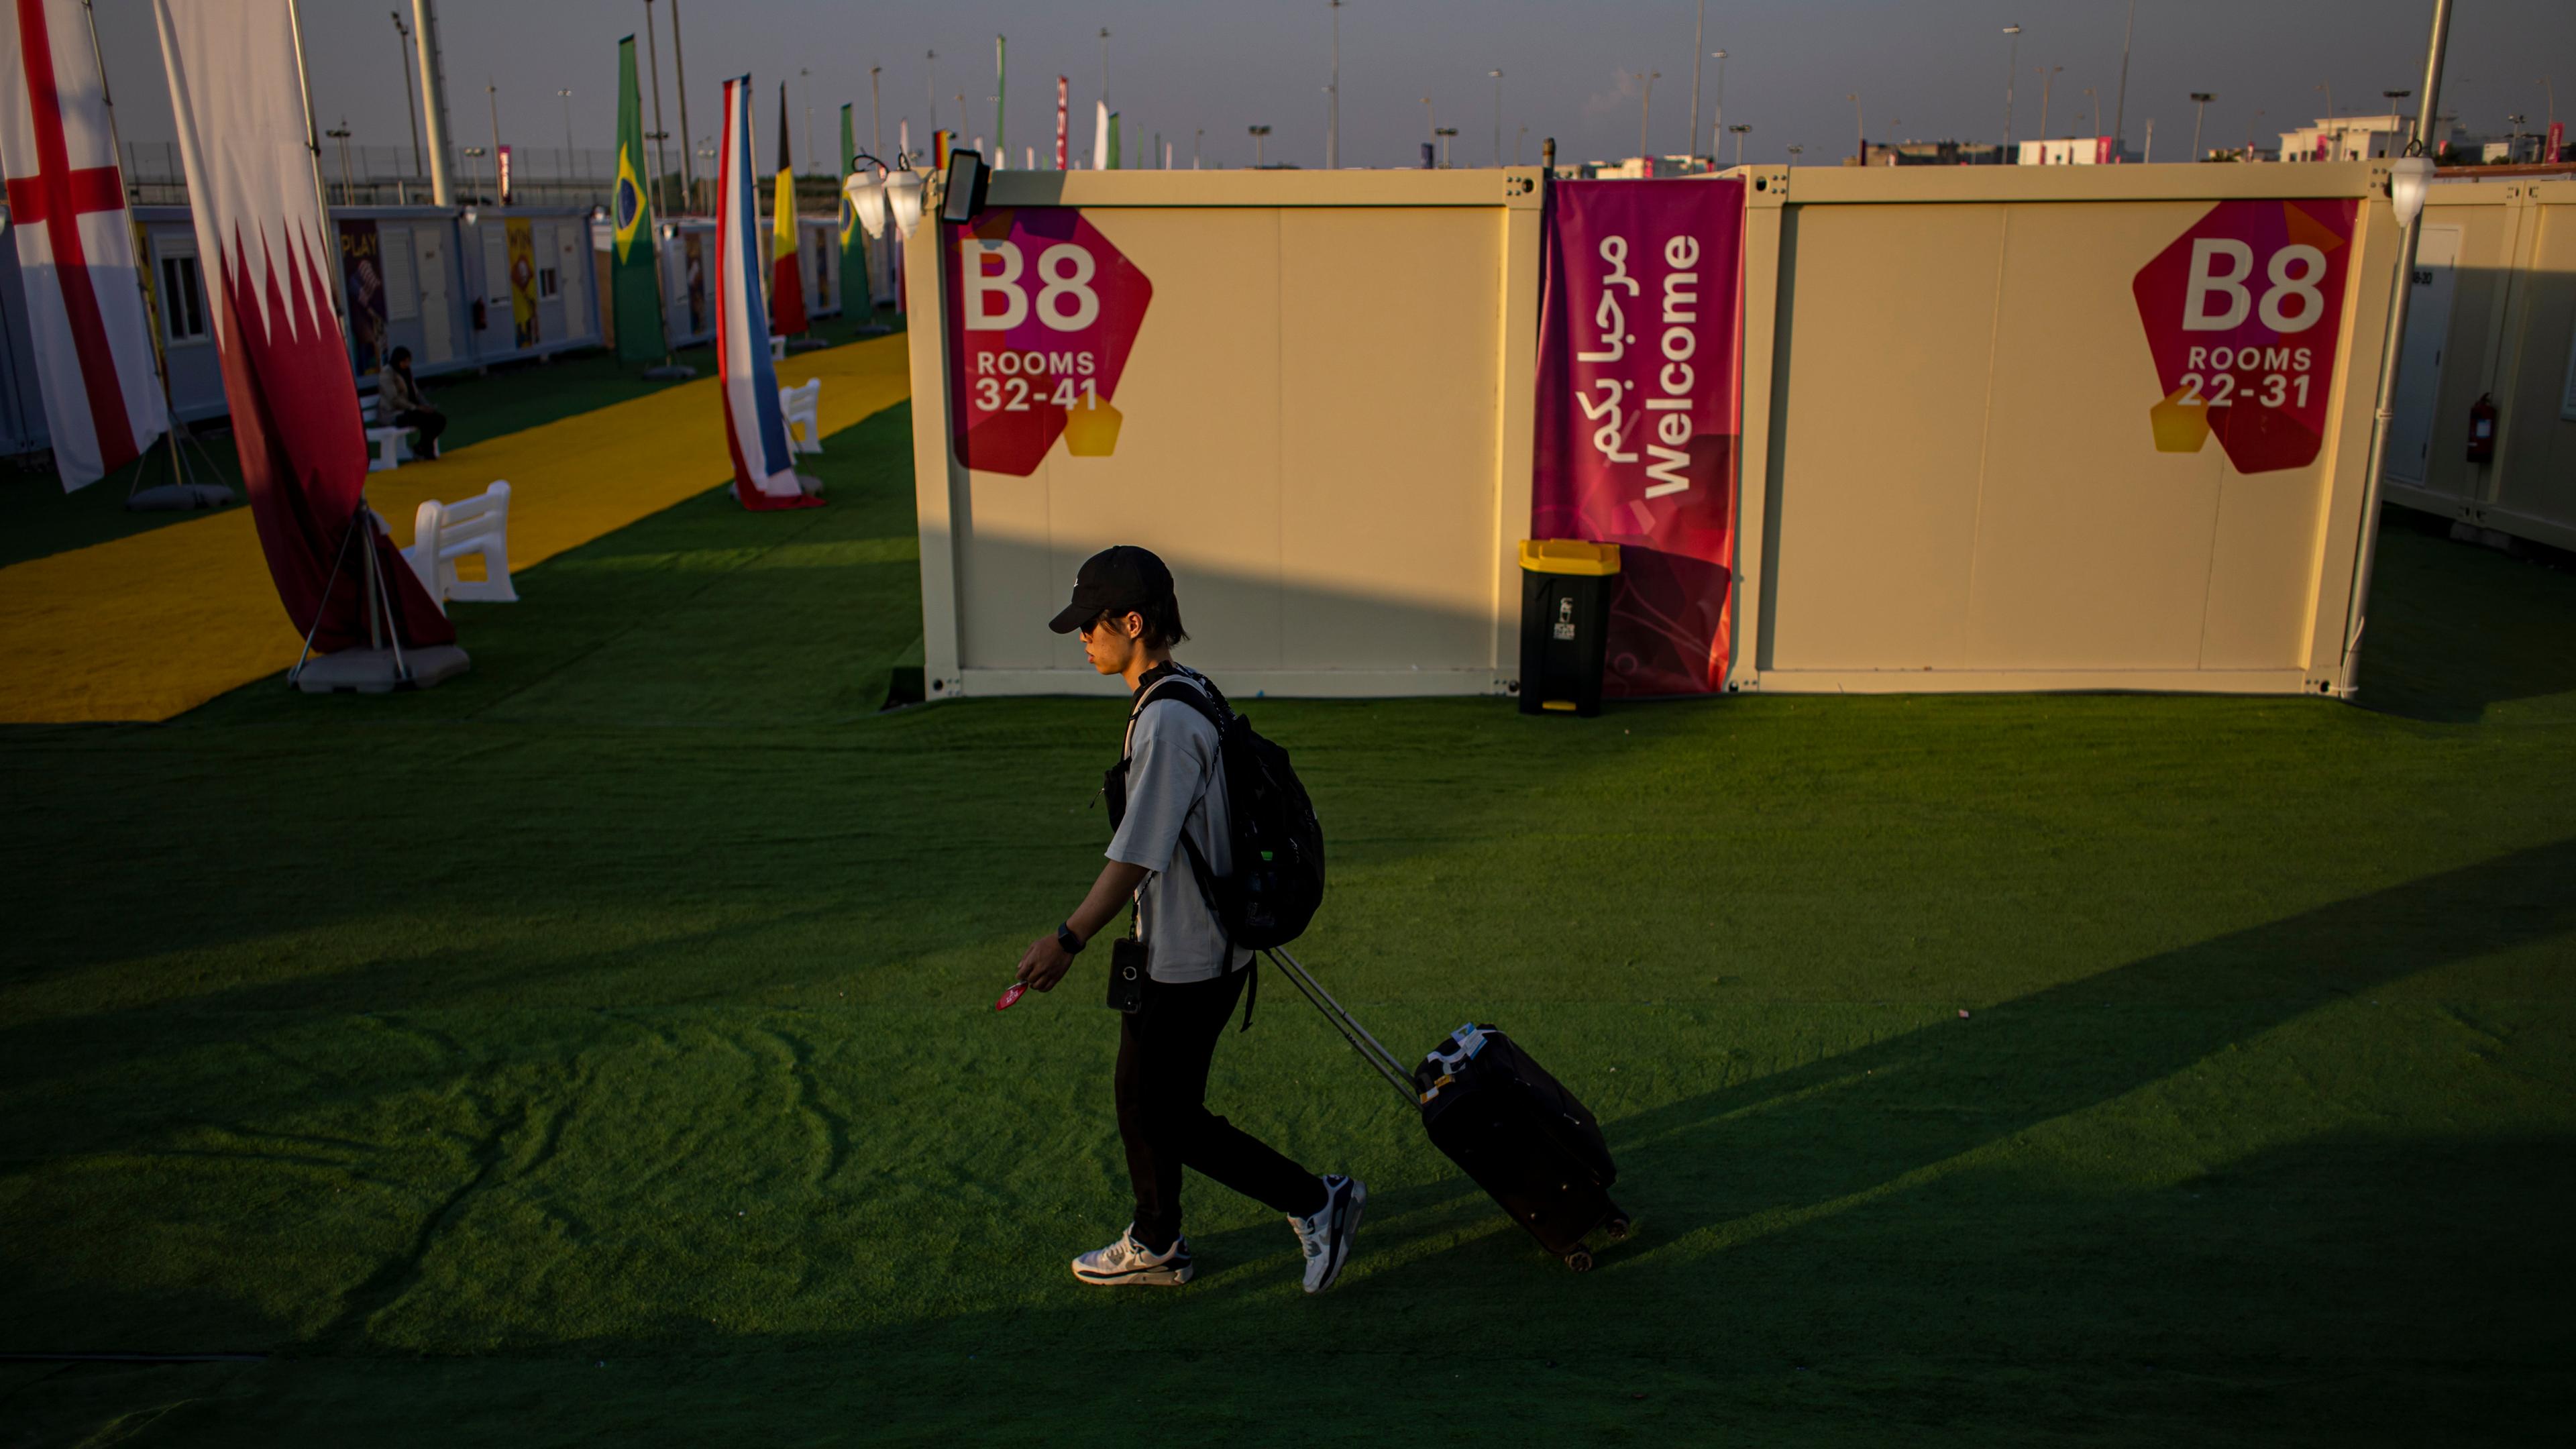 Katar, Doha: Ein Fußballfan ist im Fandorf mit einem Koffer unterwegs